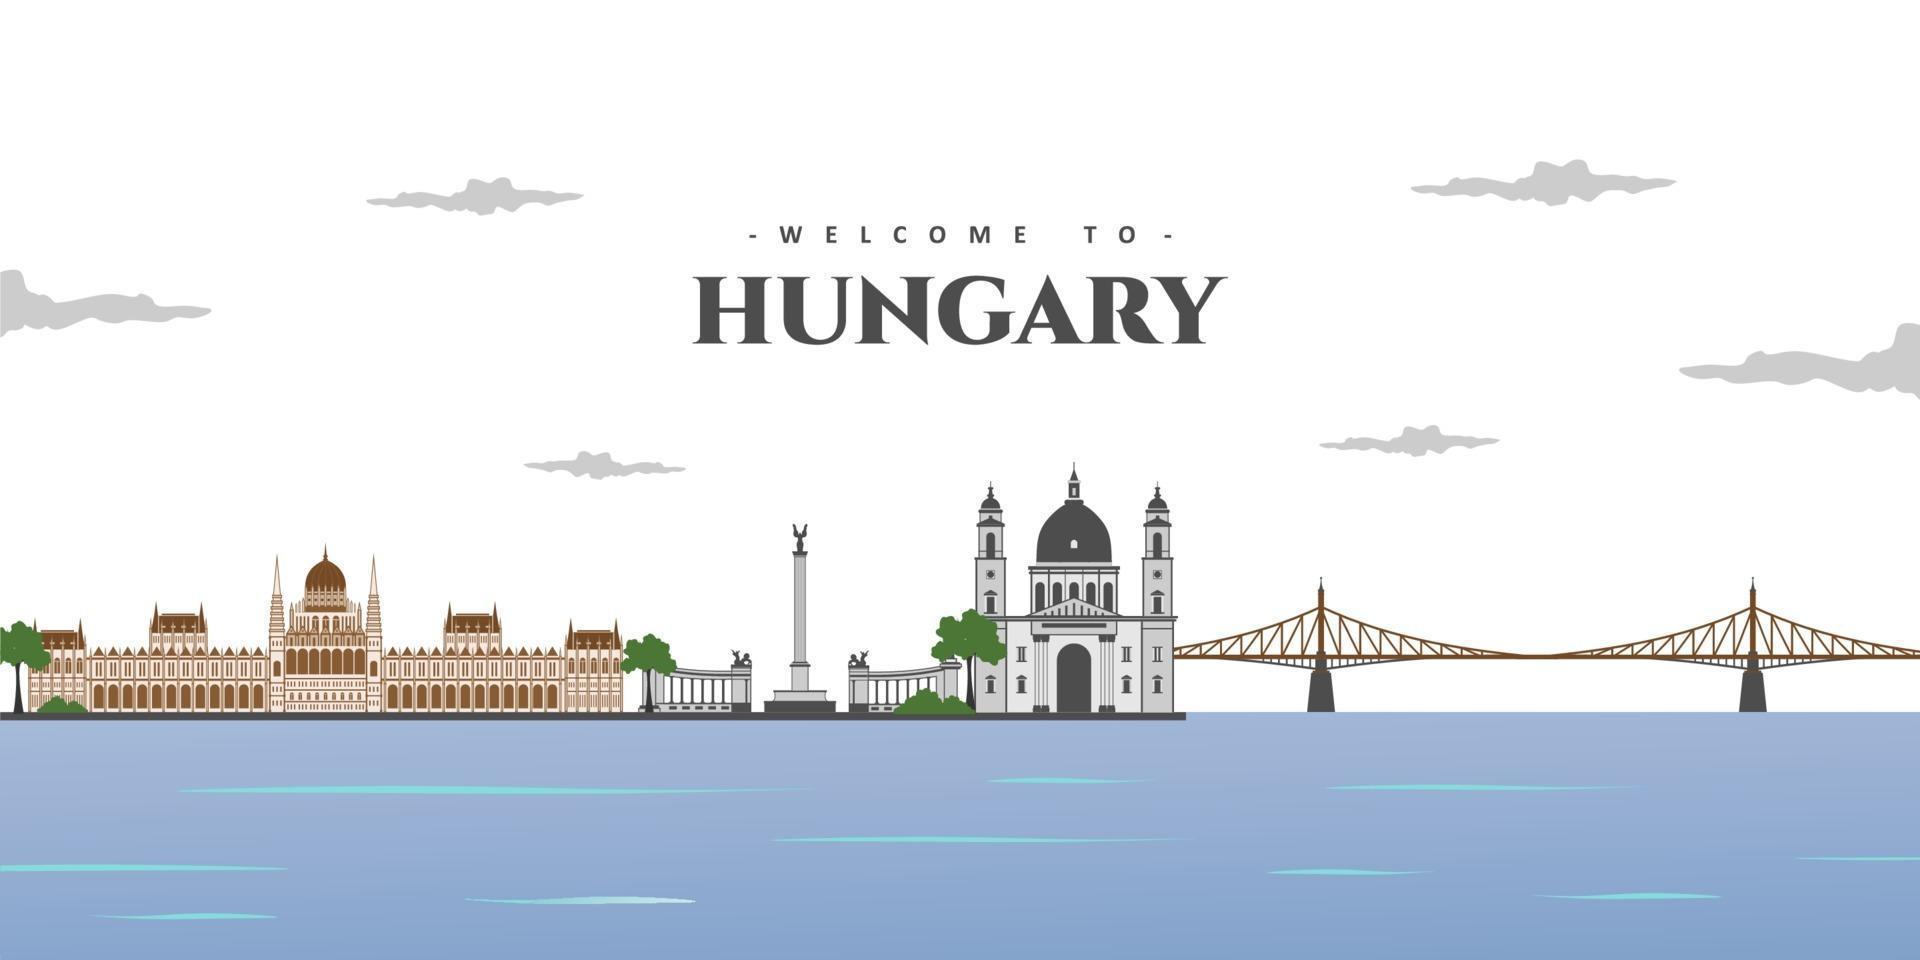 Panoramamening van Boedapest met de grootste oriëntatiepunten ter wereld, inzamelingssamenvatting geïsoleerde vectorillustratie. welkom in hongarije. rond in het wereldconcept. reizen en toeristische attractie. vector